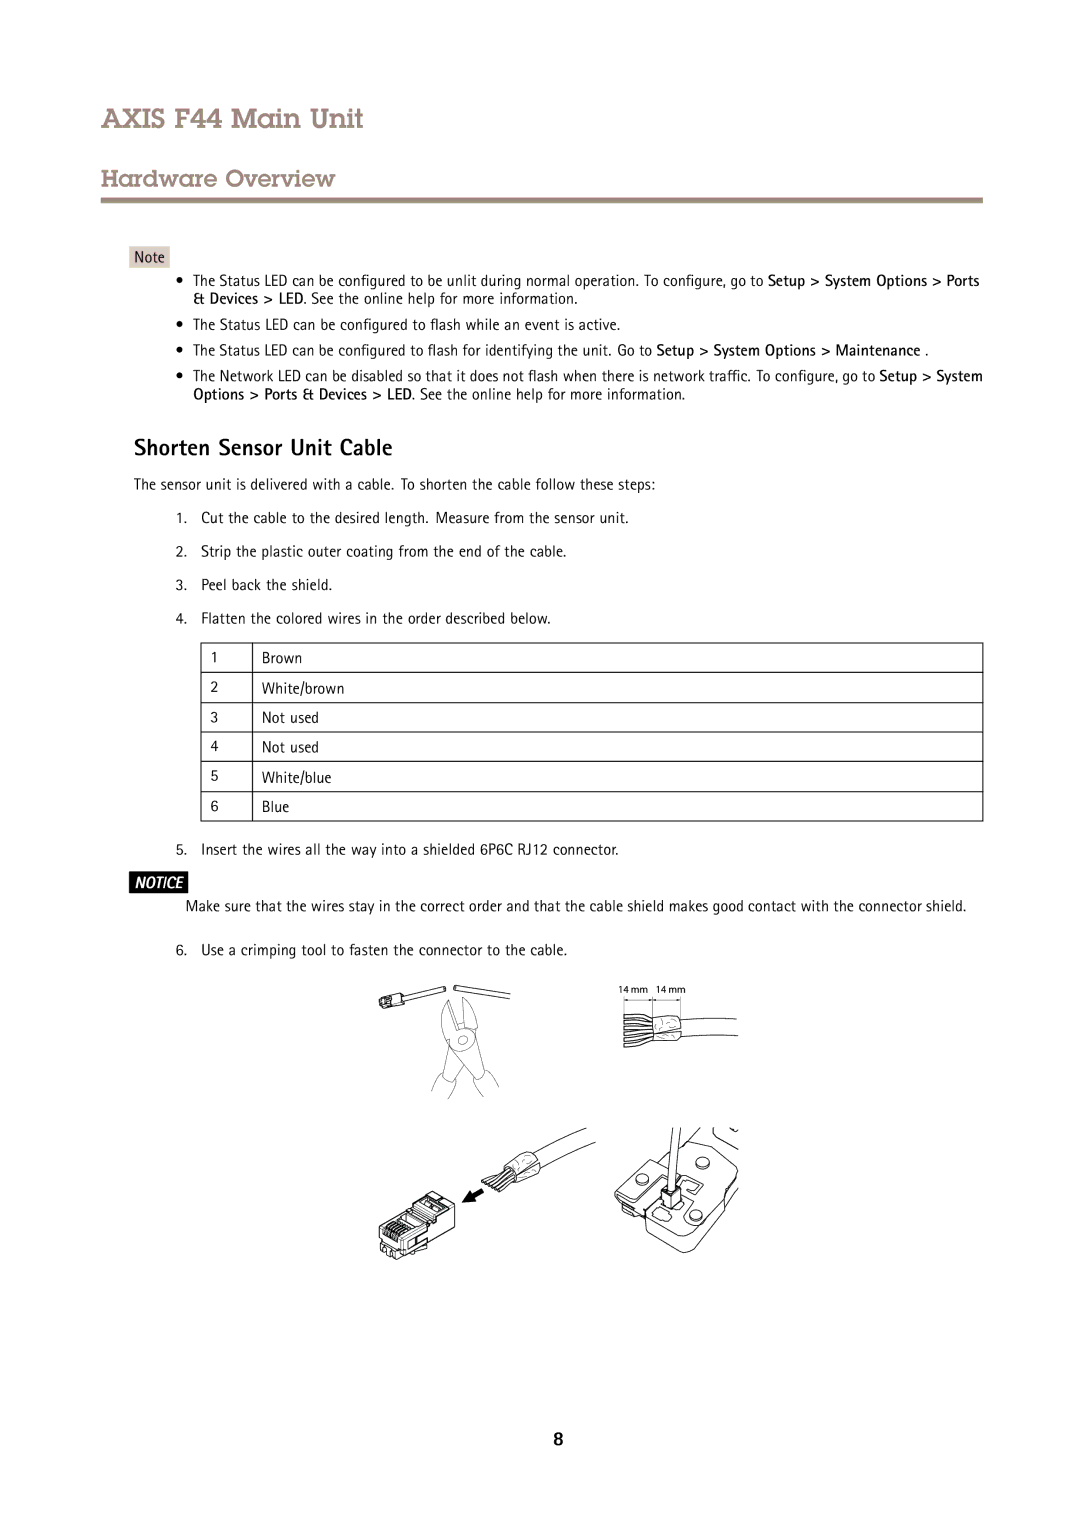 Axis Communications F44 user manual Shorten Sensor Unit Cable 